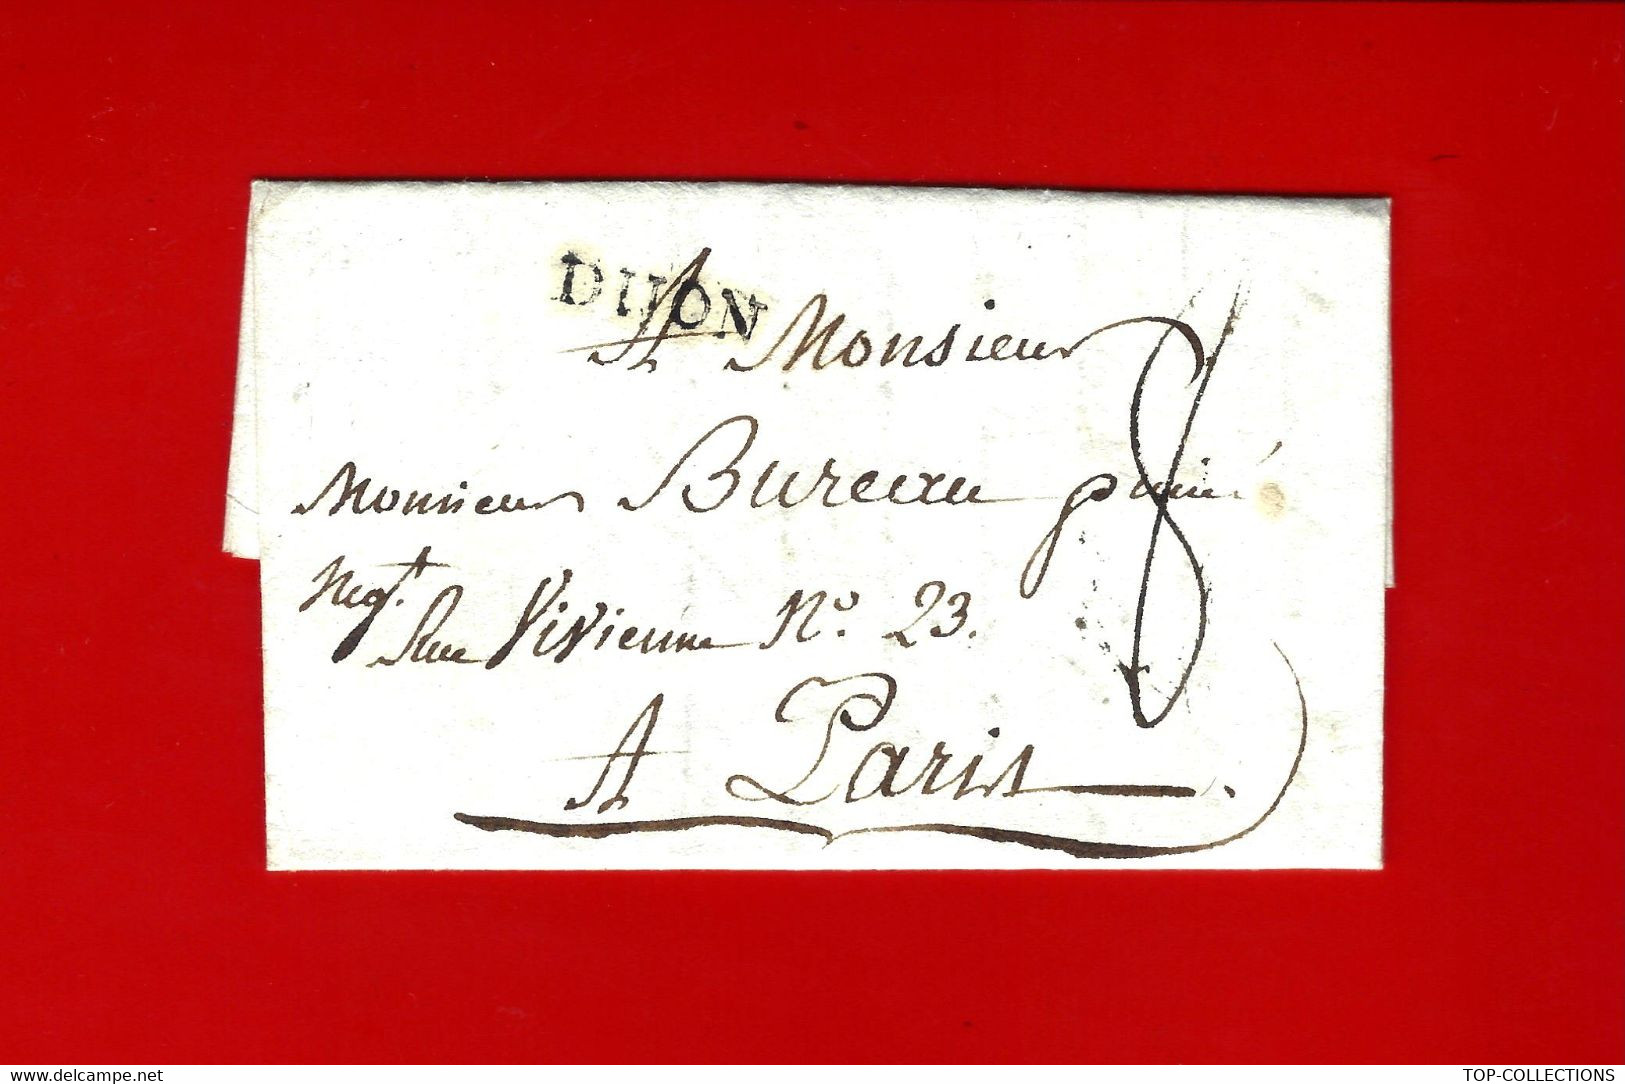 1790  Dijon lettre pour Bureau rue Vivienne Paris siège Compagnie des Indes  LA LETTRE PARLE DE Magon de la Value V.HIST